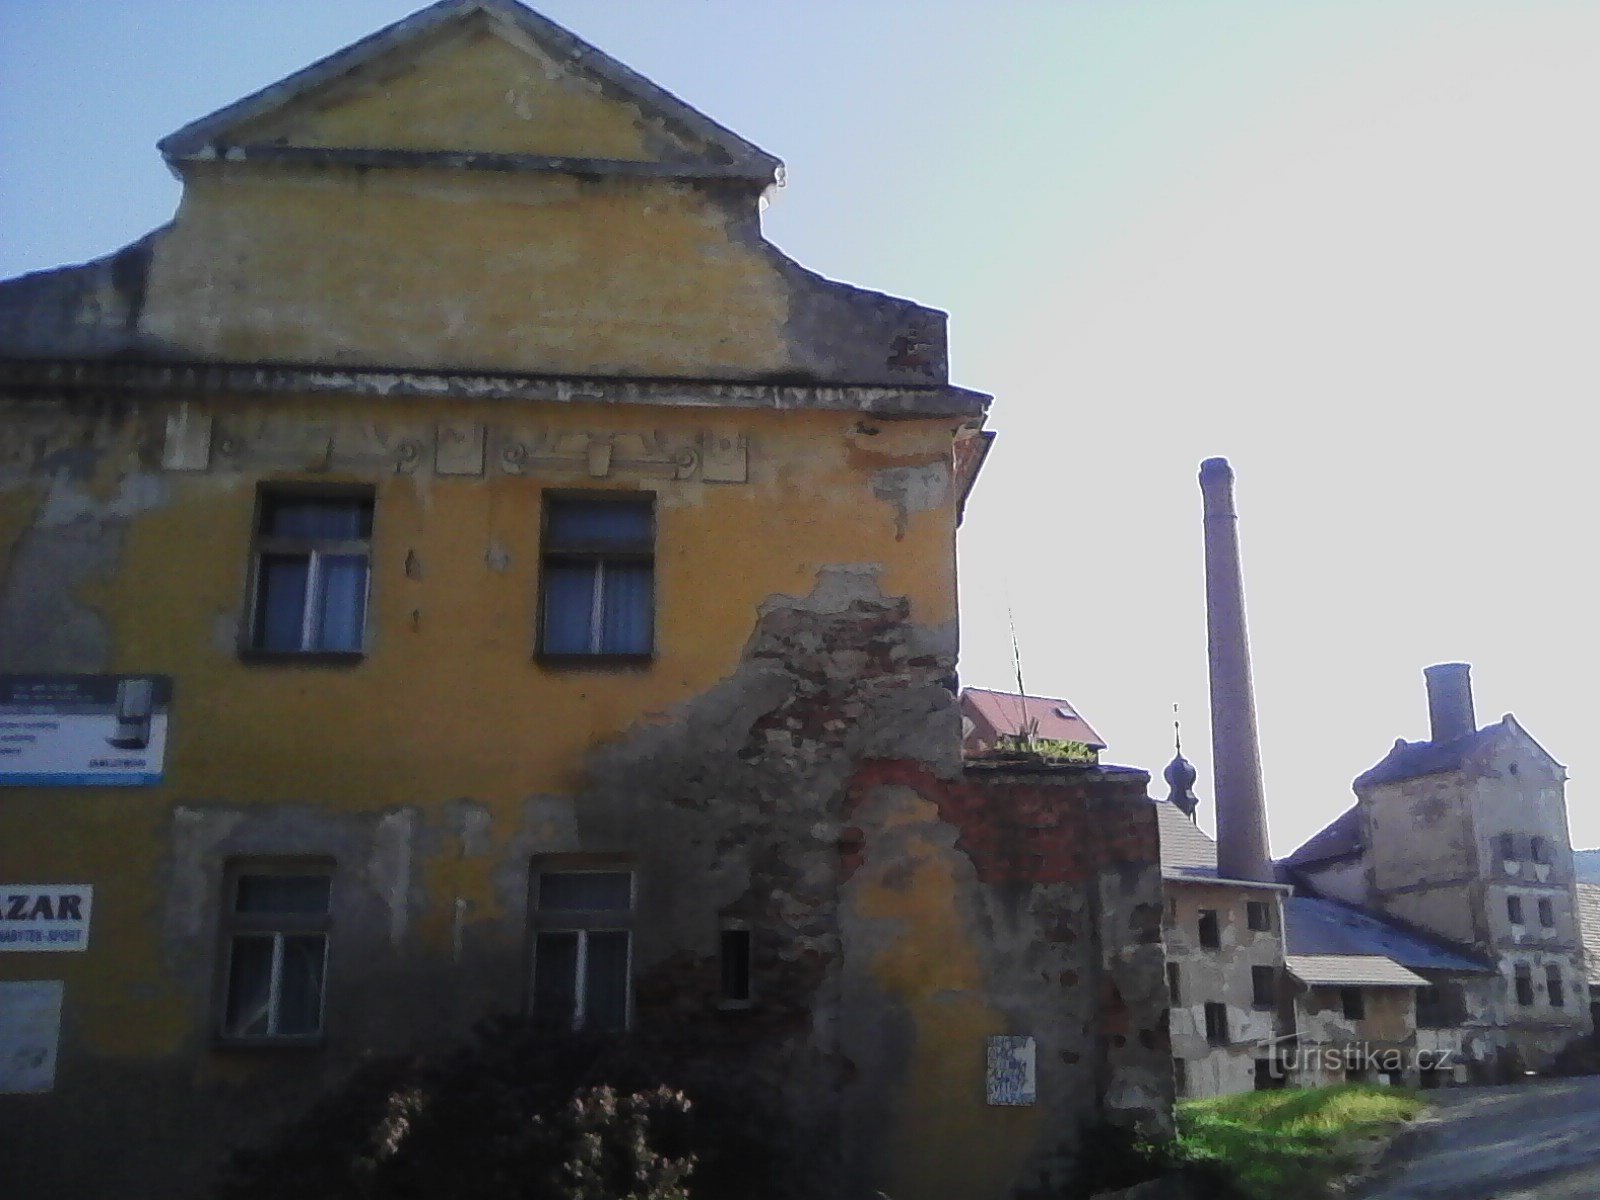 2. L'antico castello di Votice. Una fortezza del XV secolo, menzionata per la prima volta nel 15. Il castello rimane